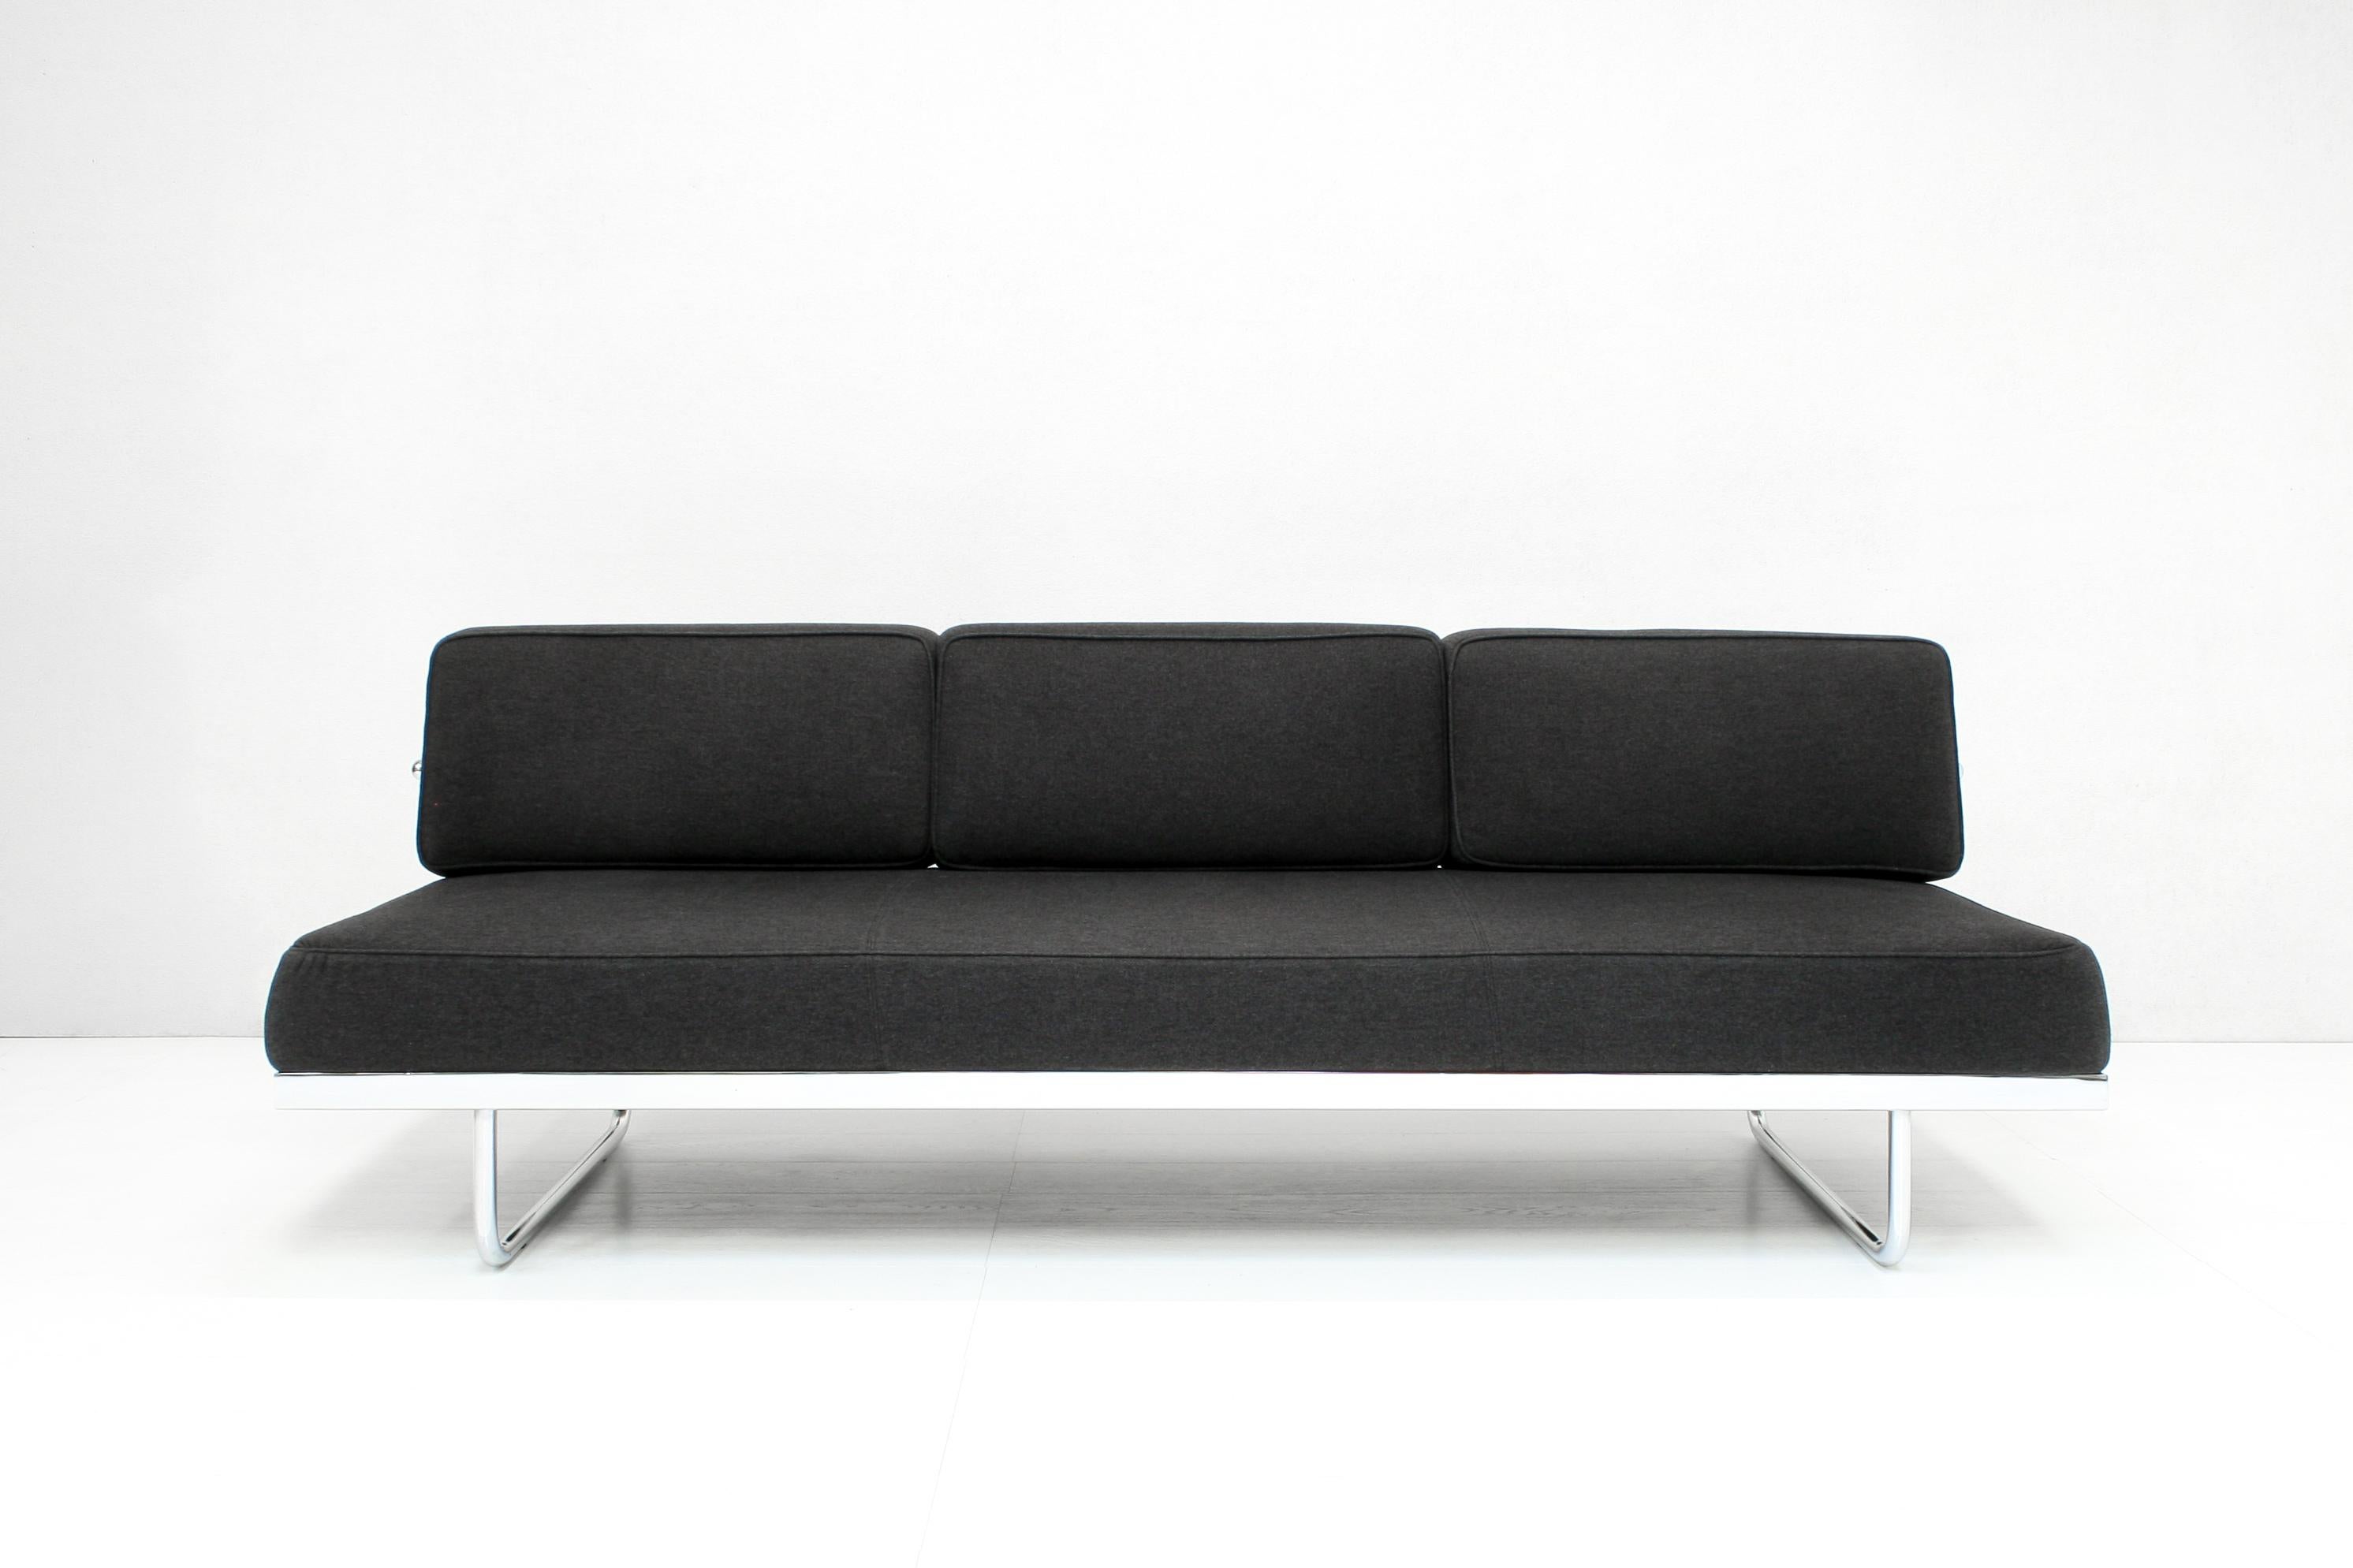 Conçu en 1934, le canapé LC5 est l'interprétation du canapé sans accoudoir par Le Corbusier. Avec son design accueillant, LC5 confère une sophistication décontractée aux salons, aux halls d'entrée et aux salles d'attente.
Le cadre confortable et